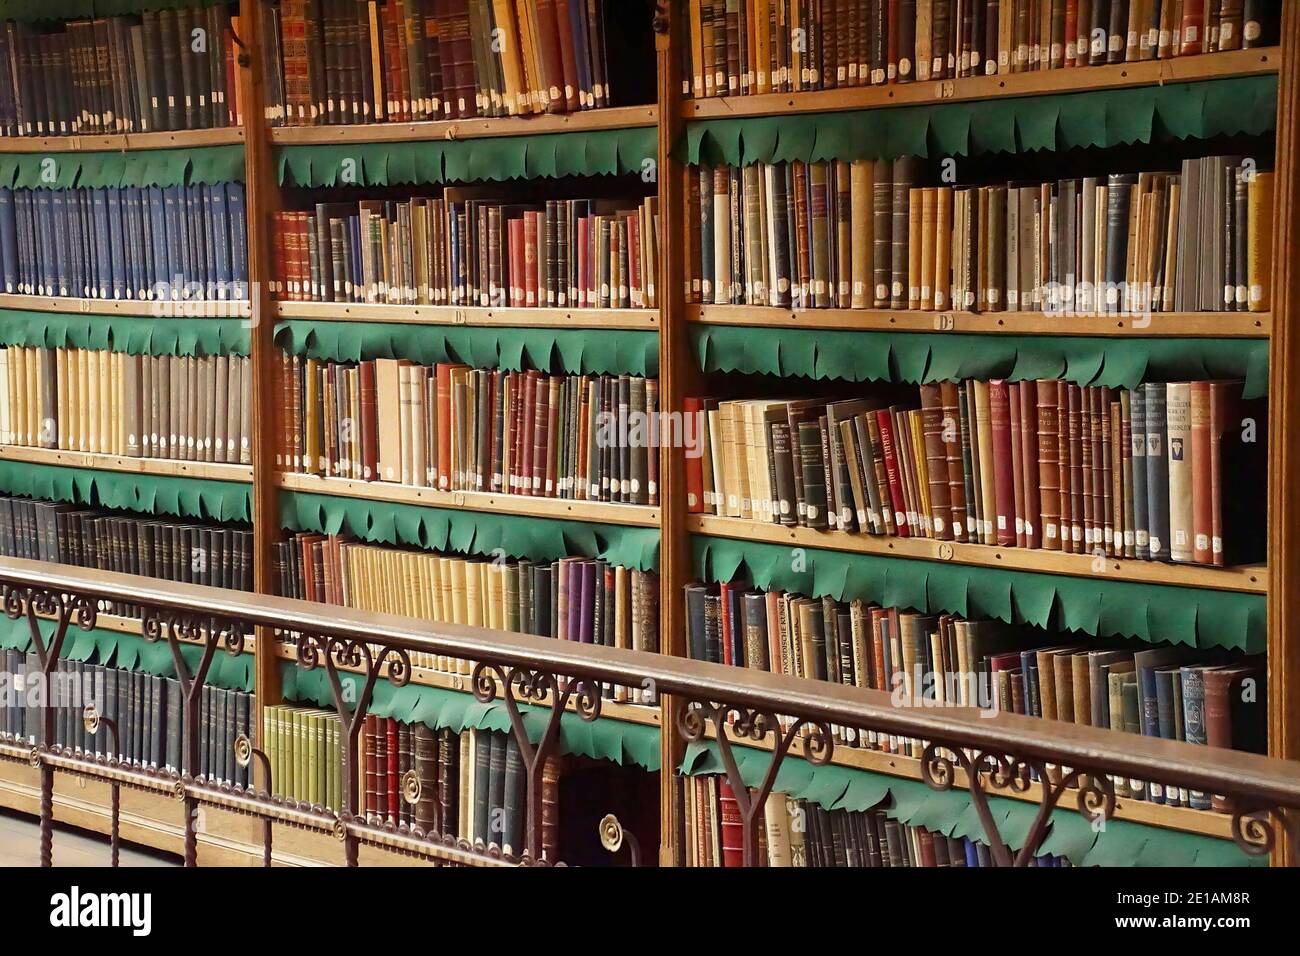 AMSTERDAM, PAYS-BAS - DEC 14, 2018 - piles de livres dans la bibliothèque du Musée Rijks, Amsterdam, pays-Bas Banque D'Images